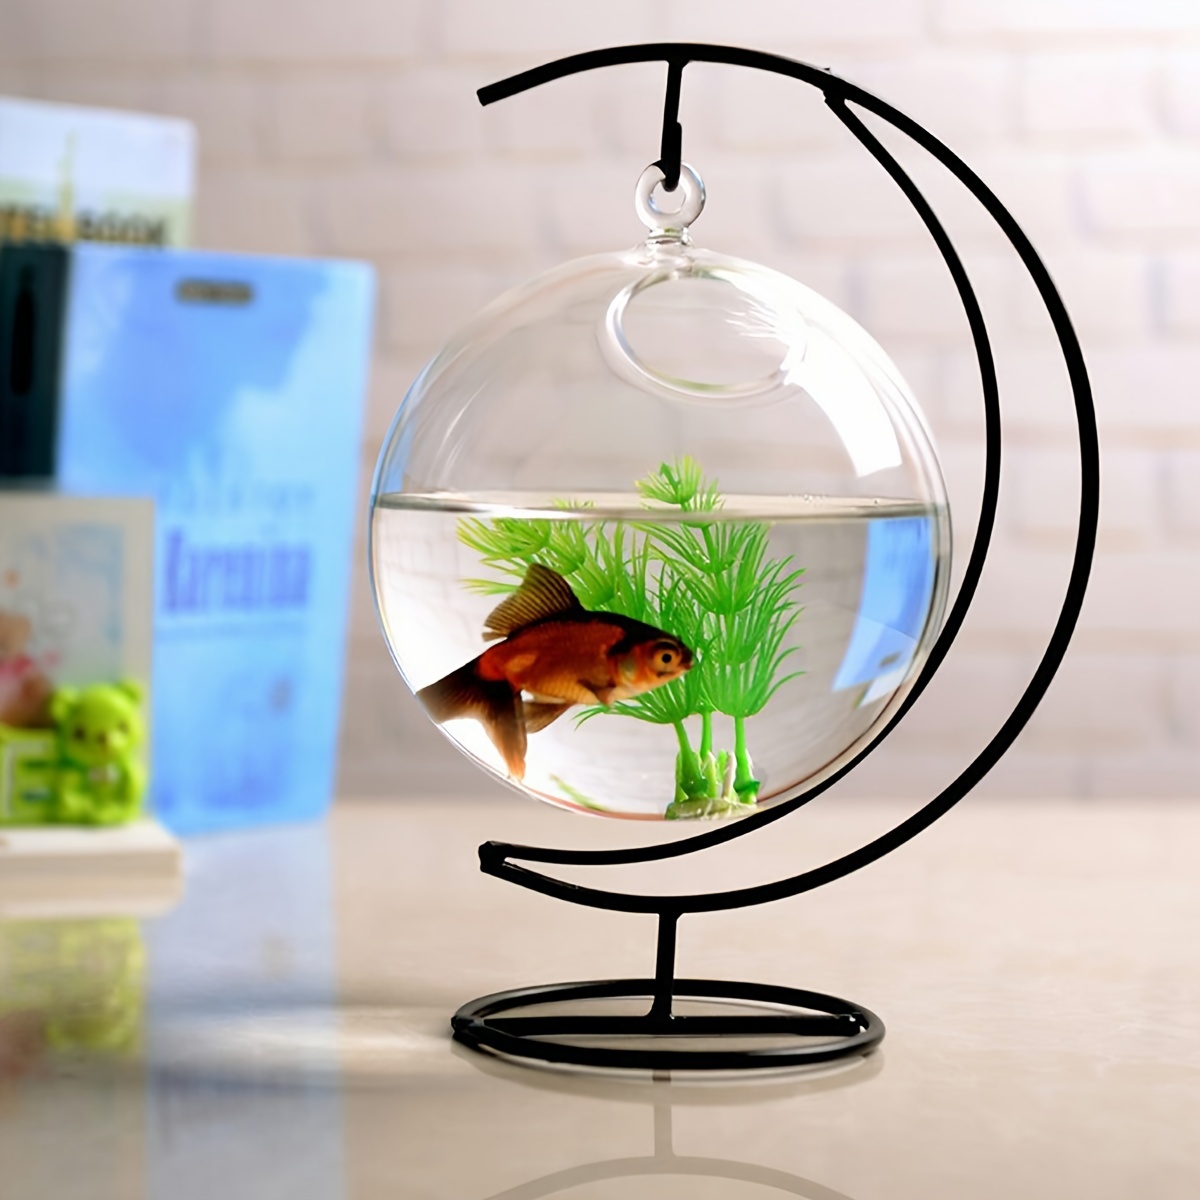 Small Fish Tank Decor Fish Bowl Accessories Betta Glass Aquarium